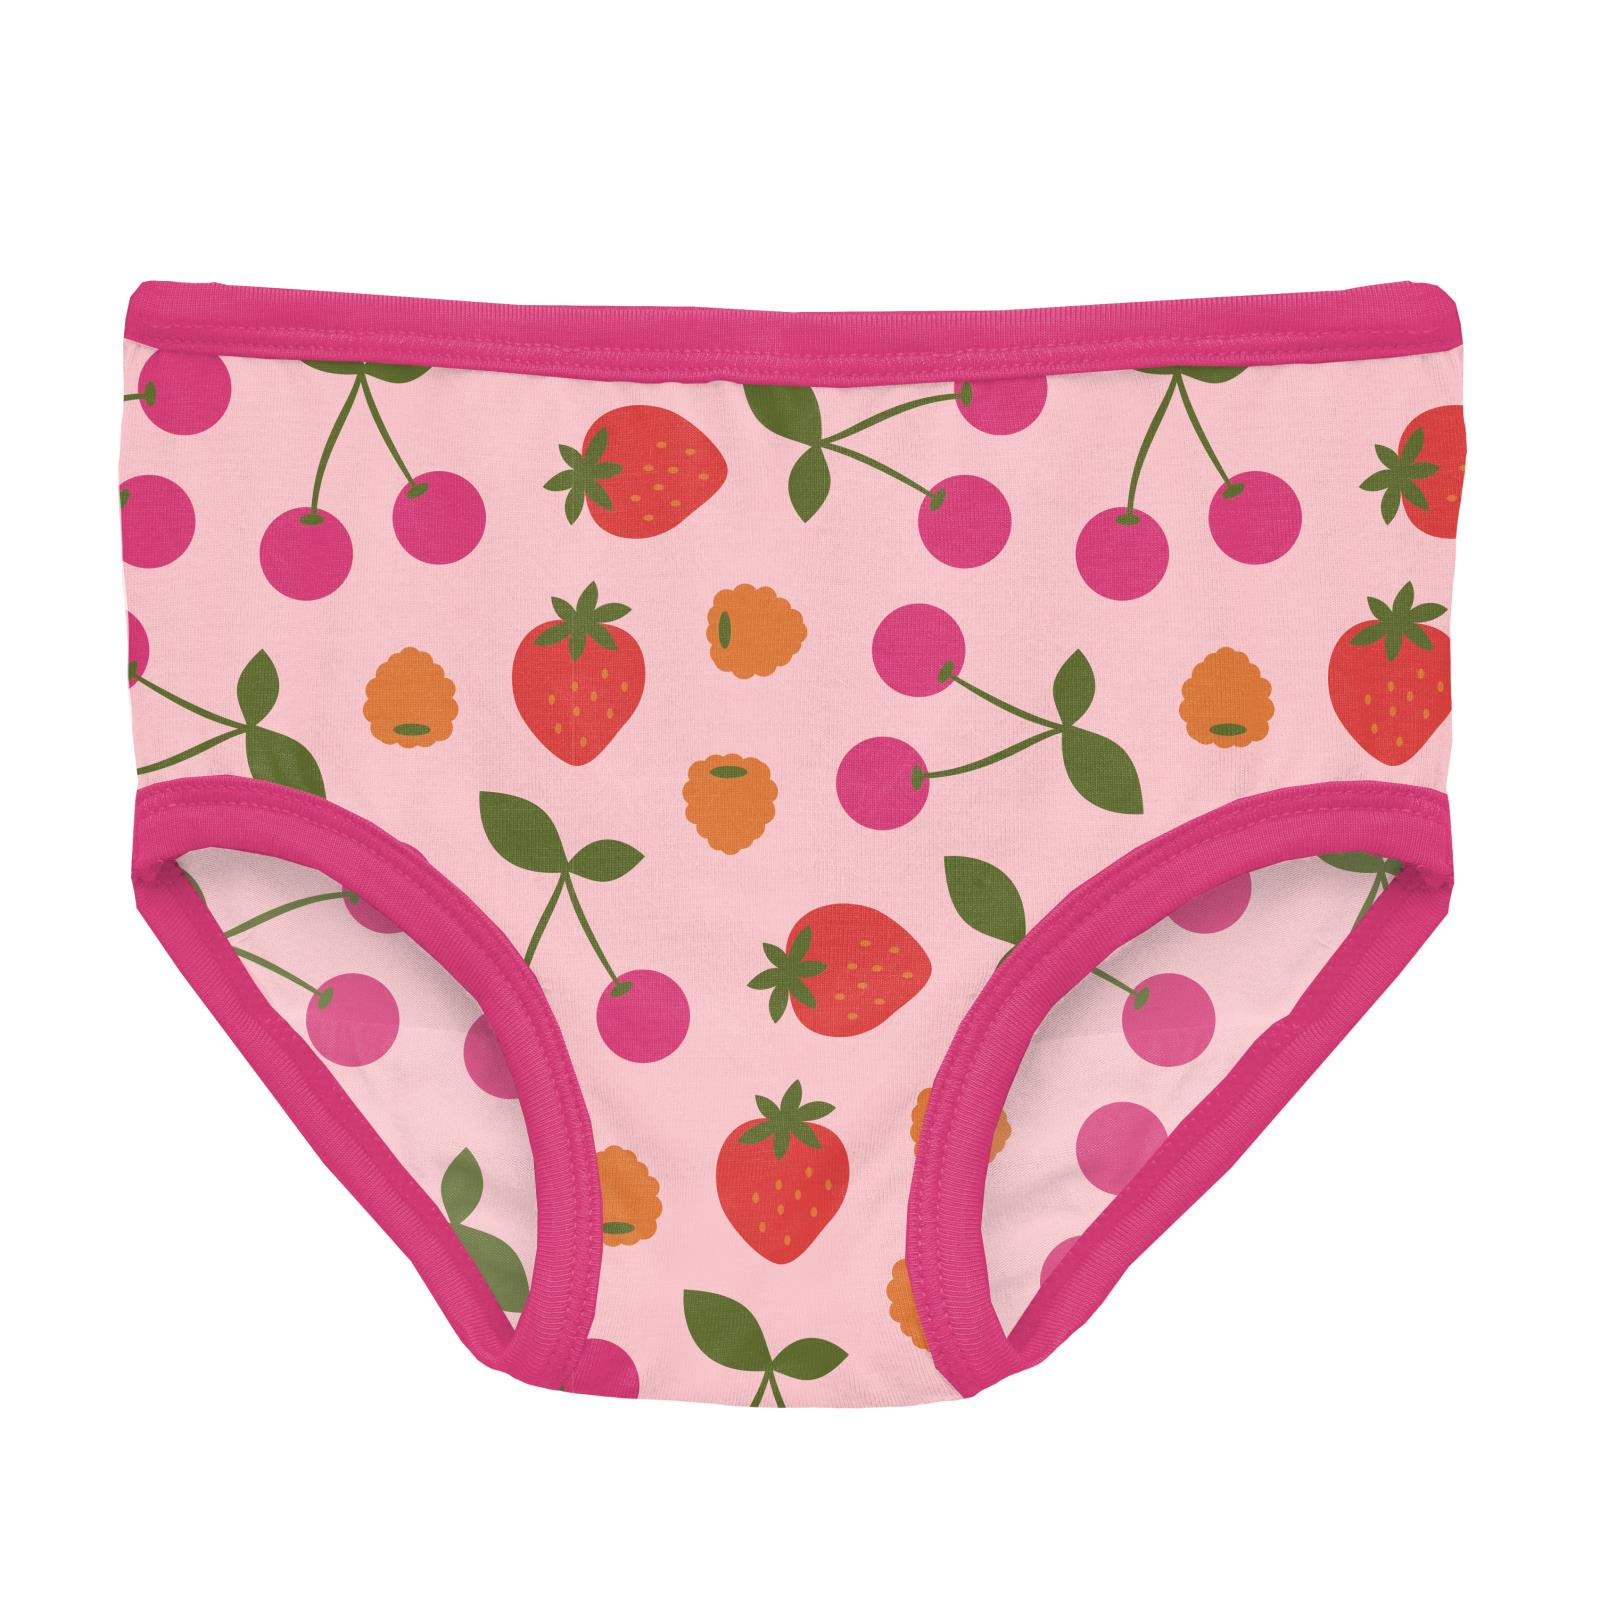  KicKee Pants Printed Girls Underwear, Incredibly